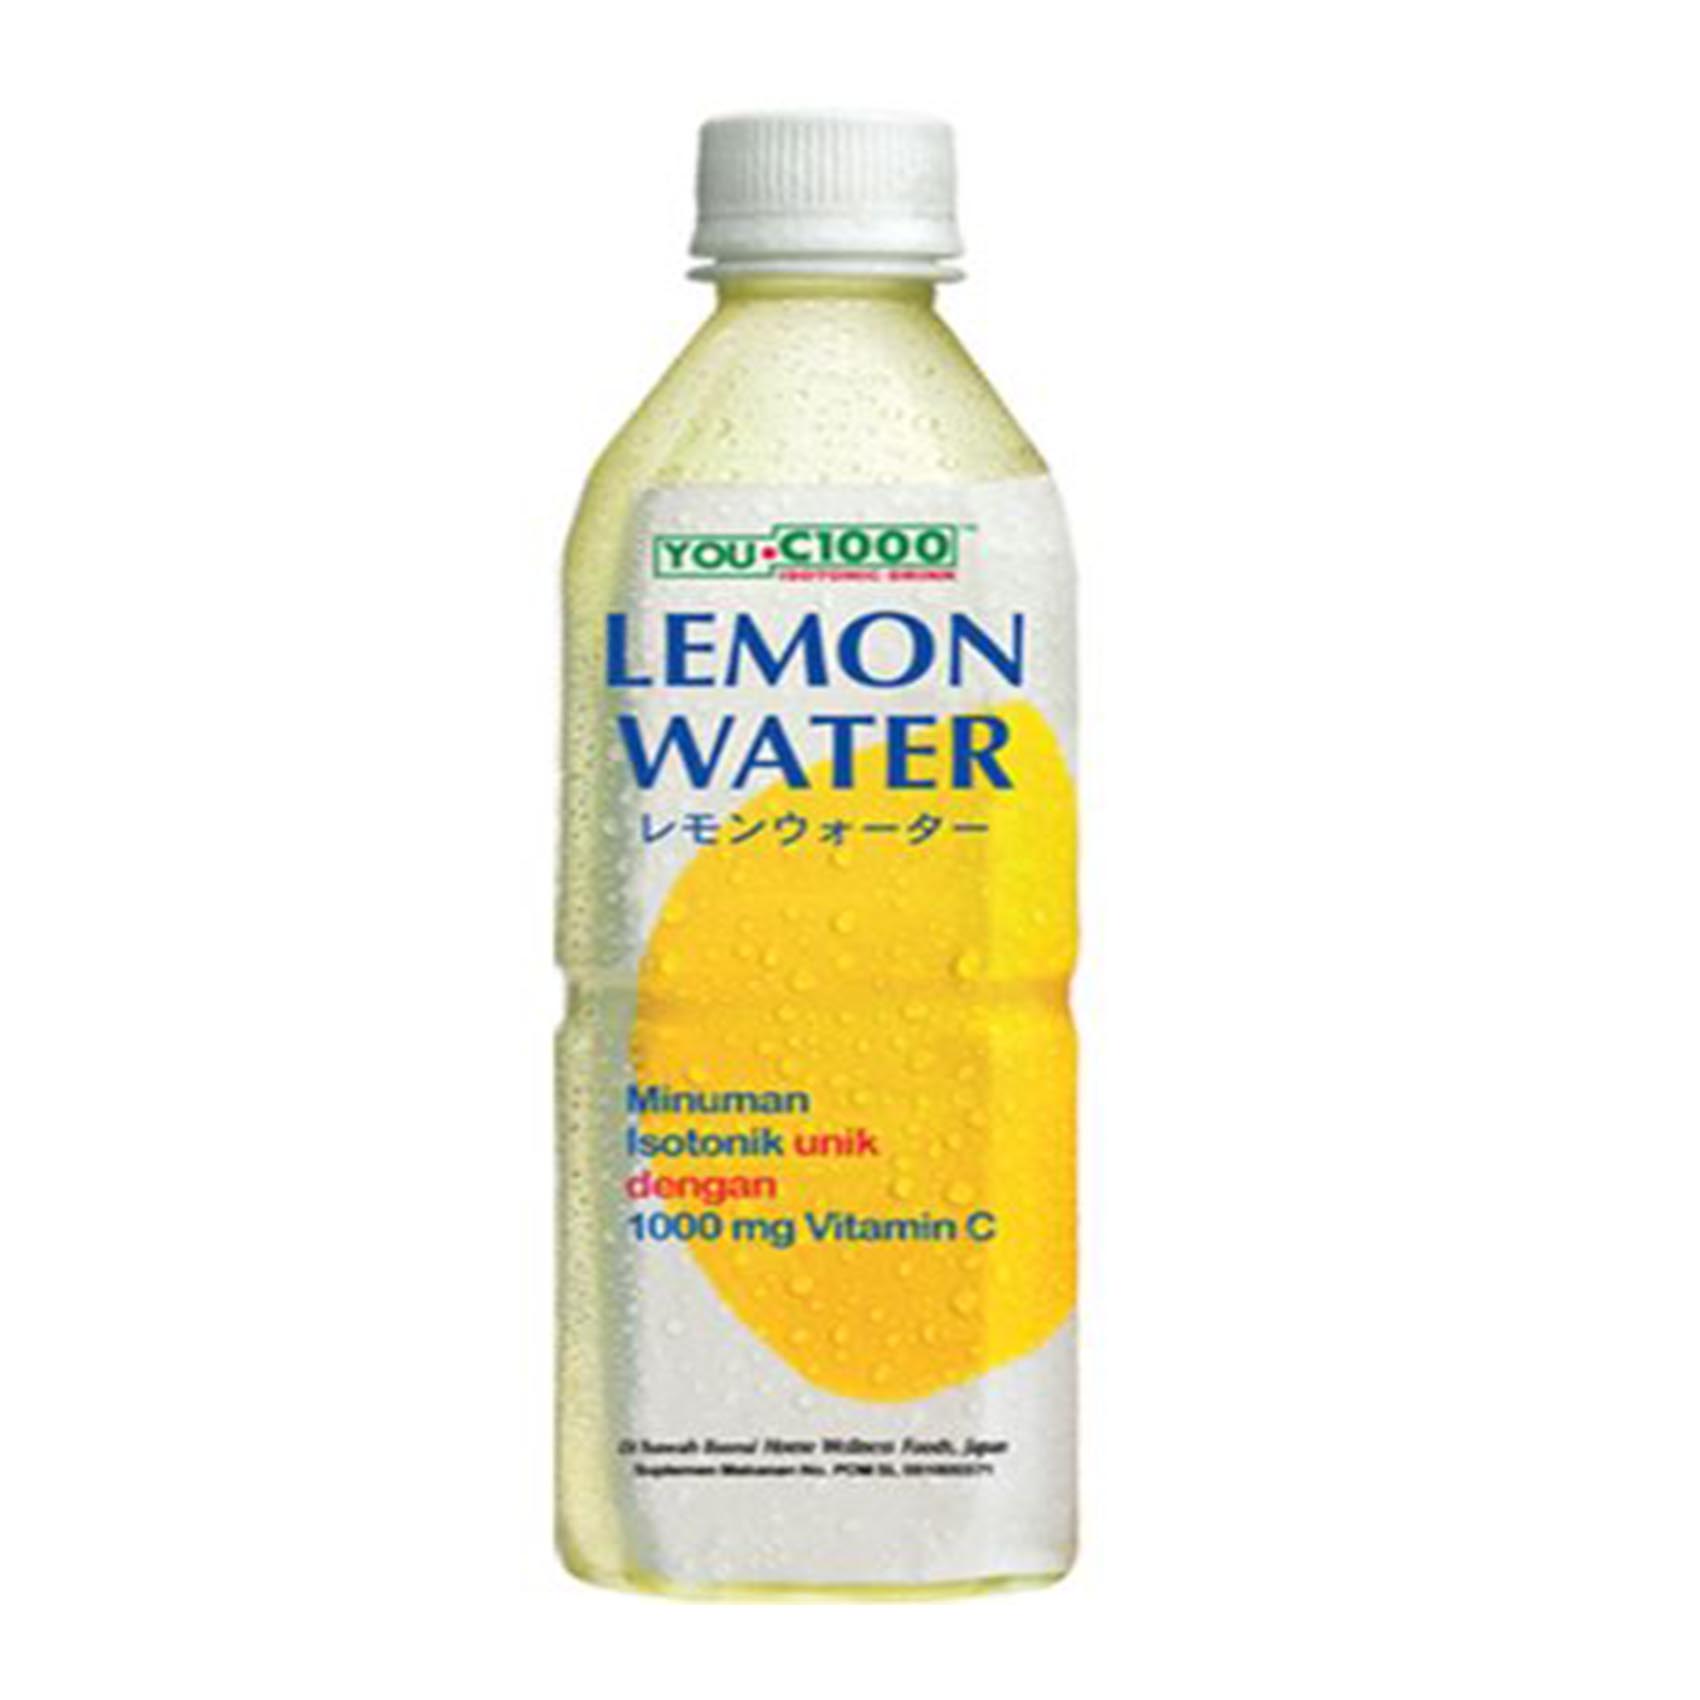 You.C1000 Isotonic Lemon Water 500ml